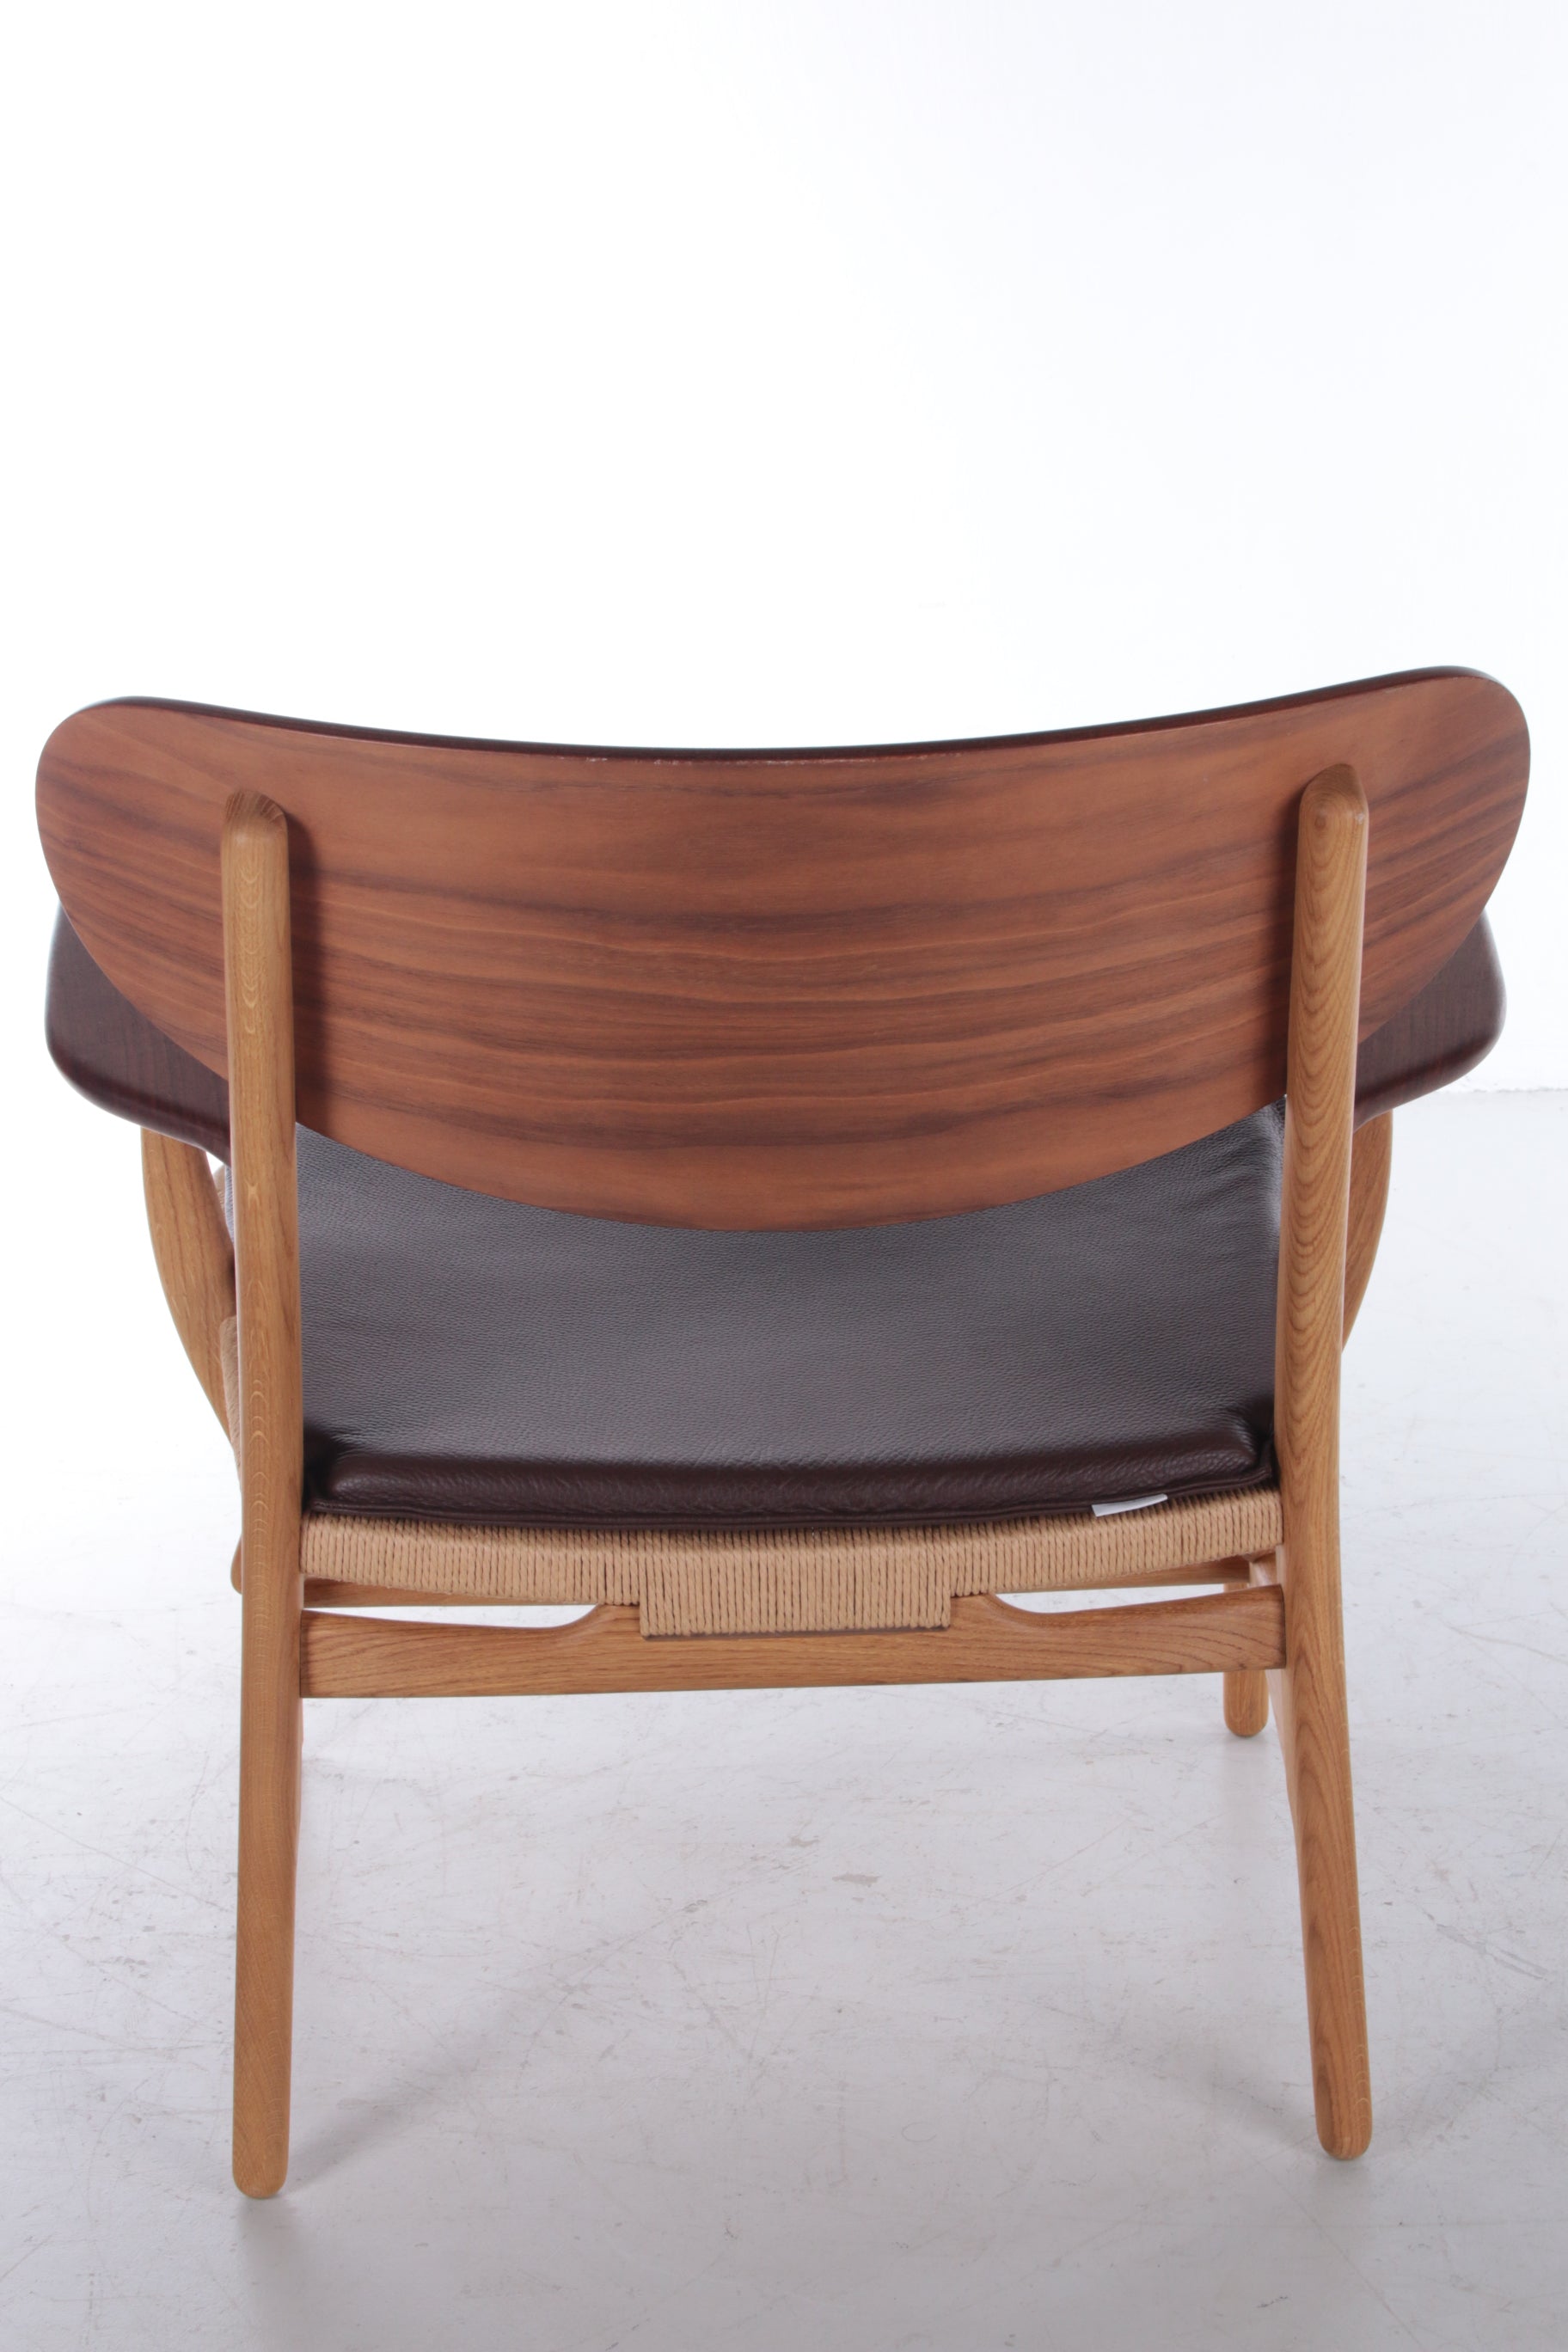 Model CH22 Lounge Chair by Hans J. Wegner for Carl Hansen & Søn achterkant